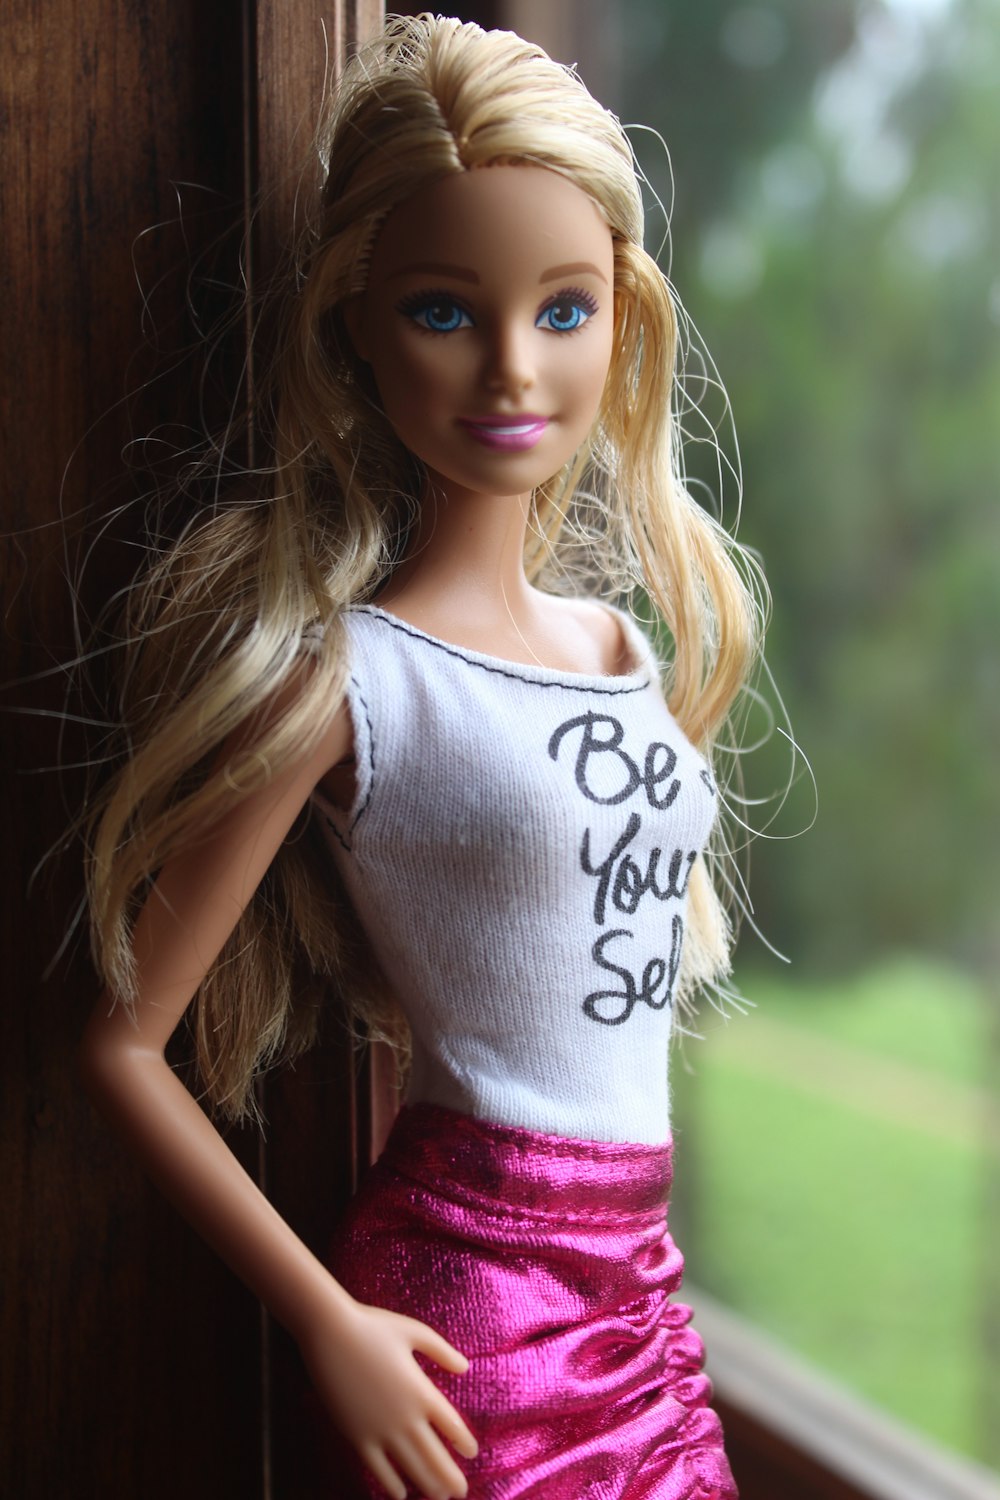 Más de 500 fotos de Barbie [HQ] | Descargar imágenes gratis en Unsplash